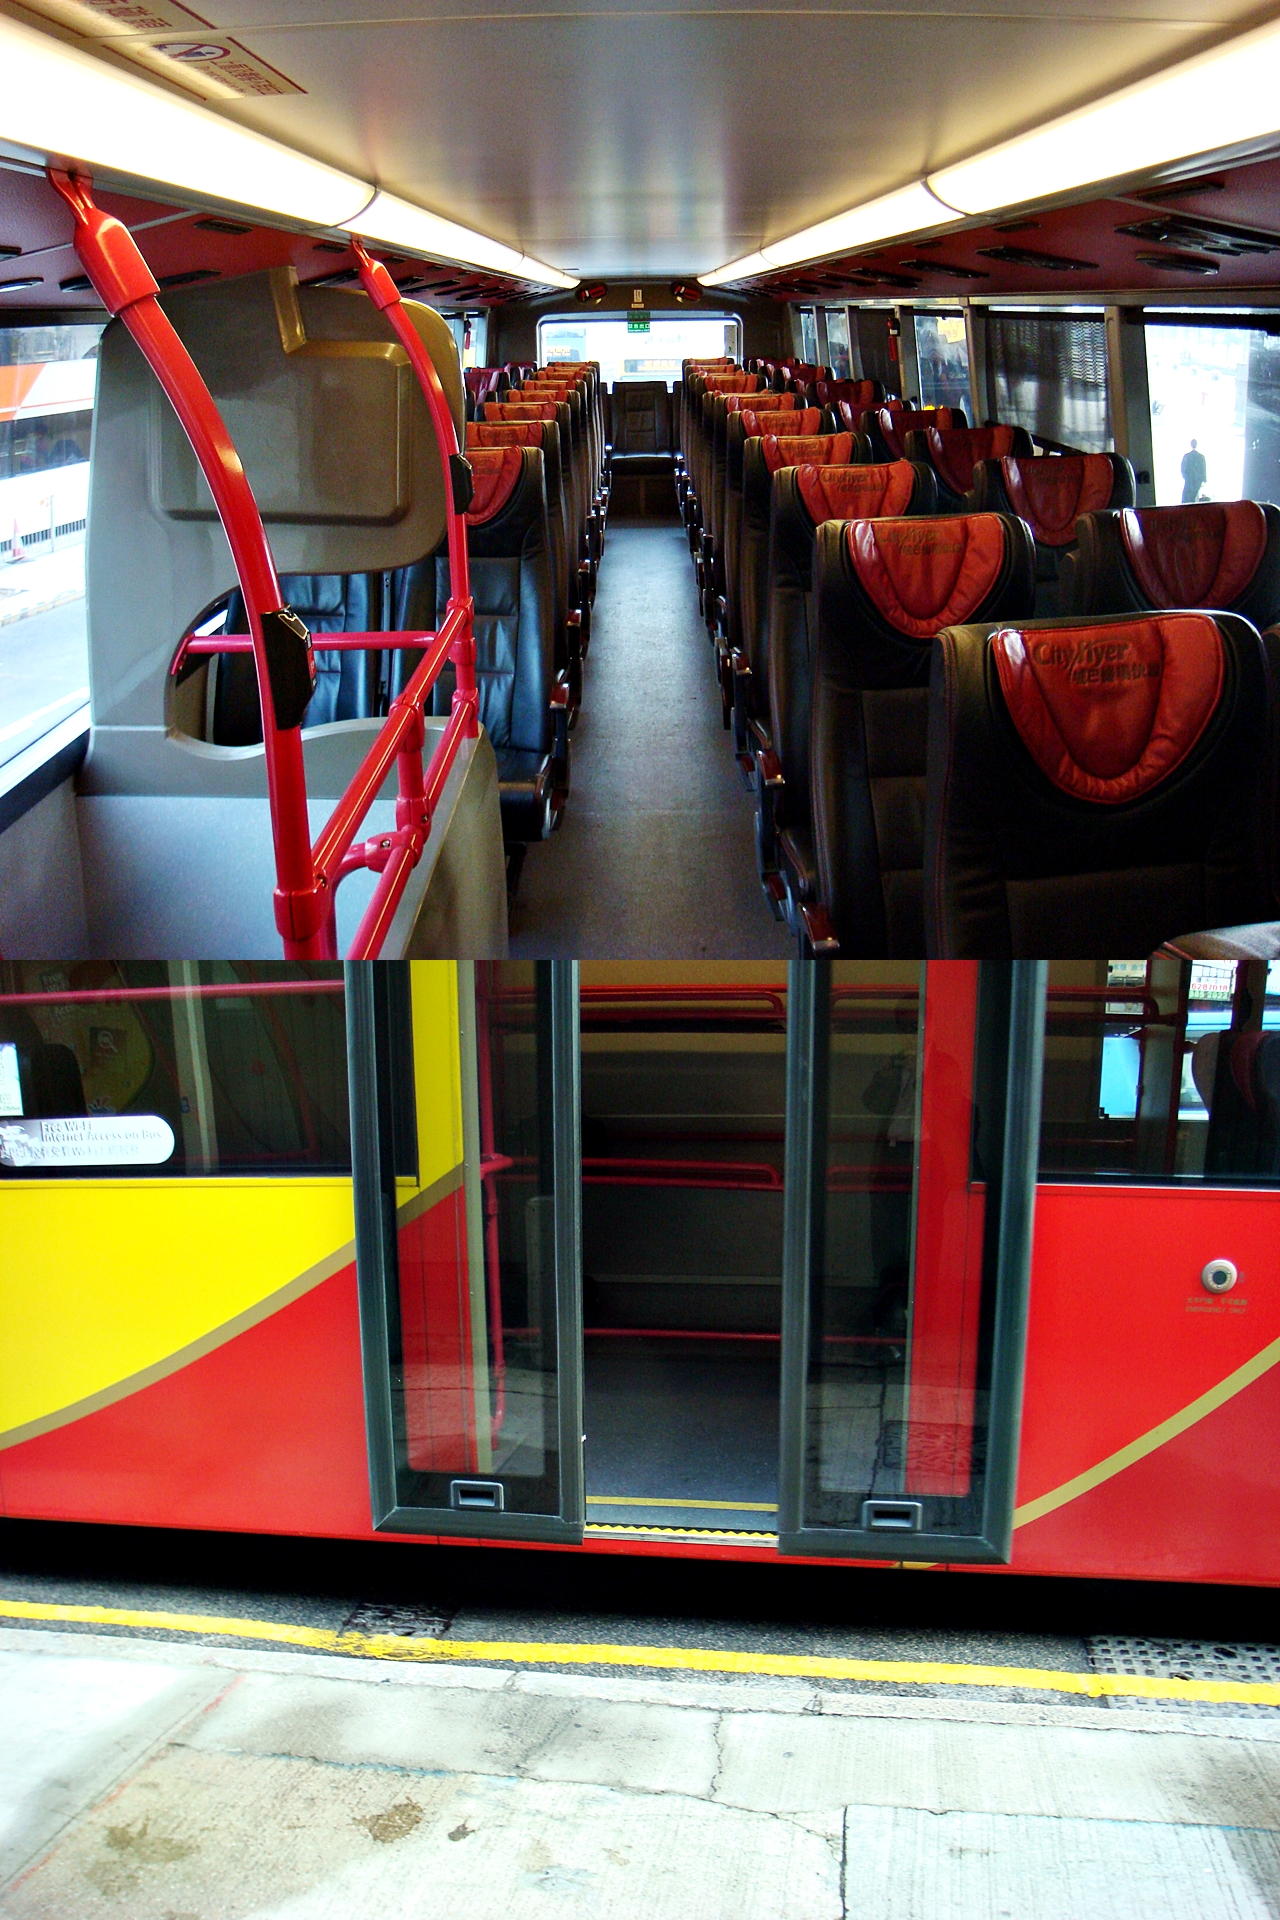 홍콩의 2층 공항버스. 2층에서는 편안한 좌석을 제공하며, 1층은 저상구조로 계단이 없어서 짐이 많은 일반인도 편리하다